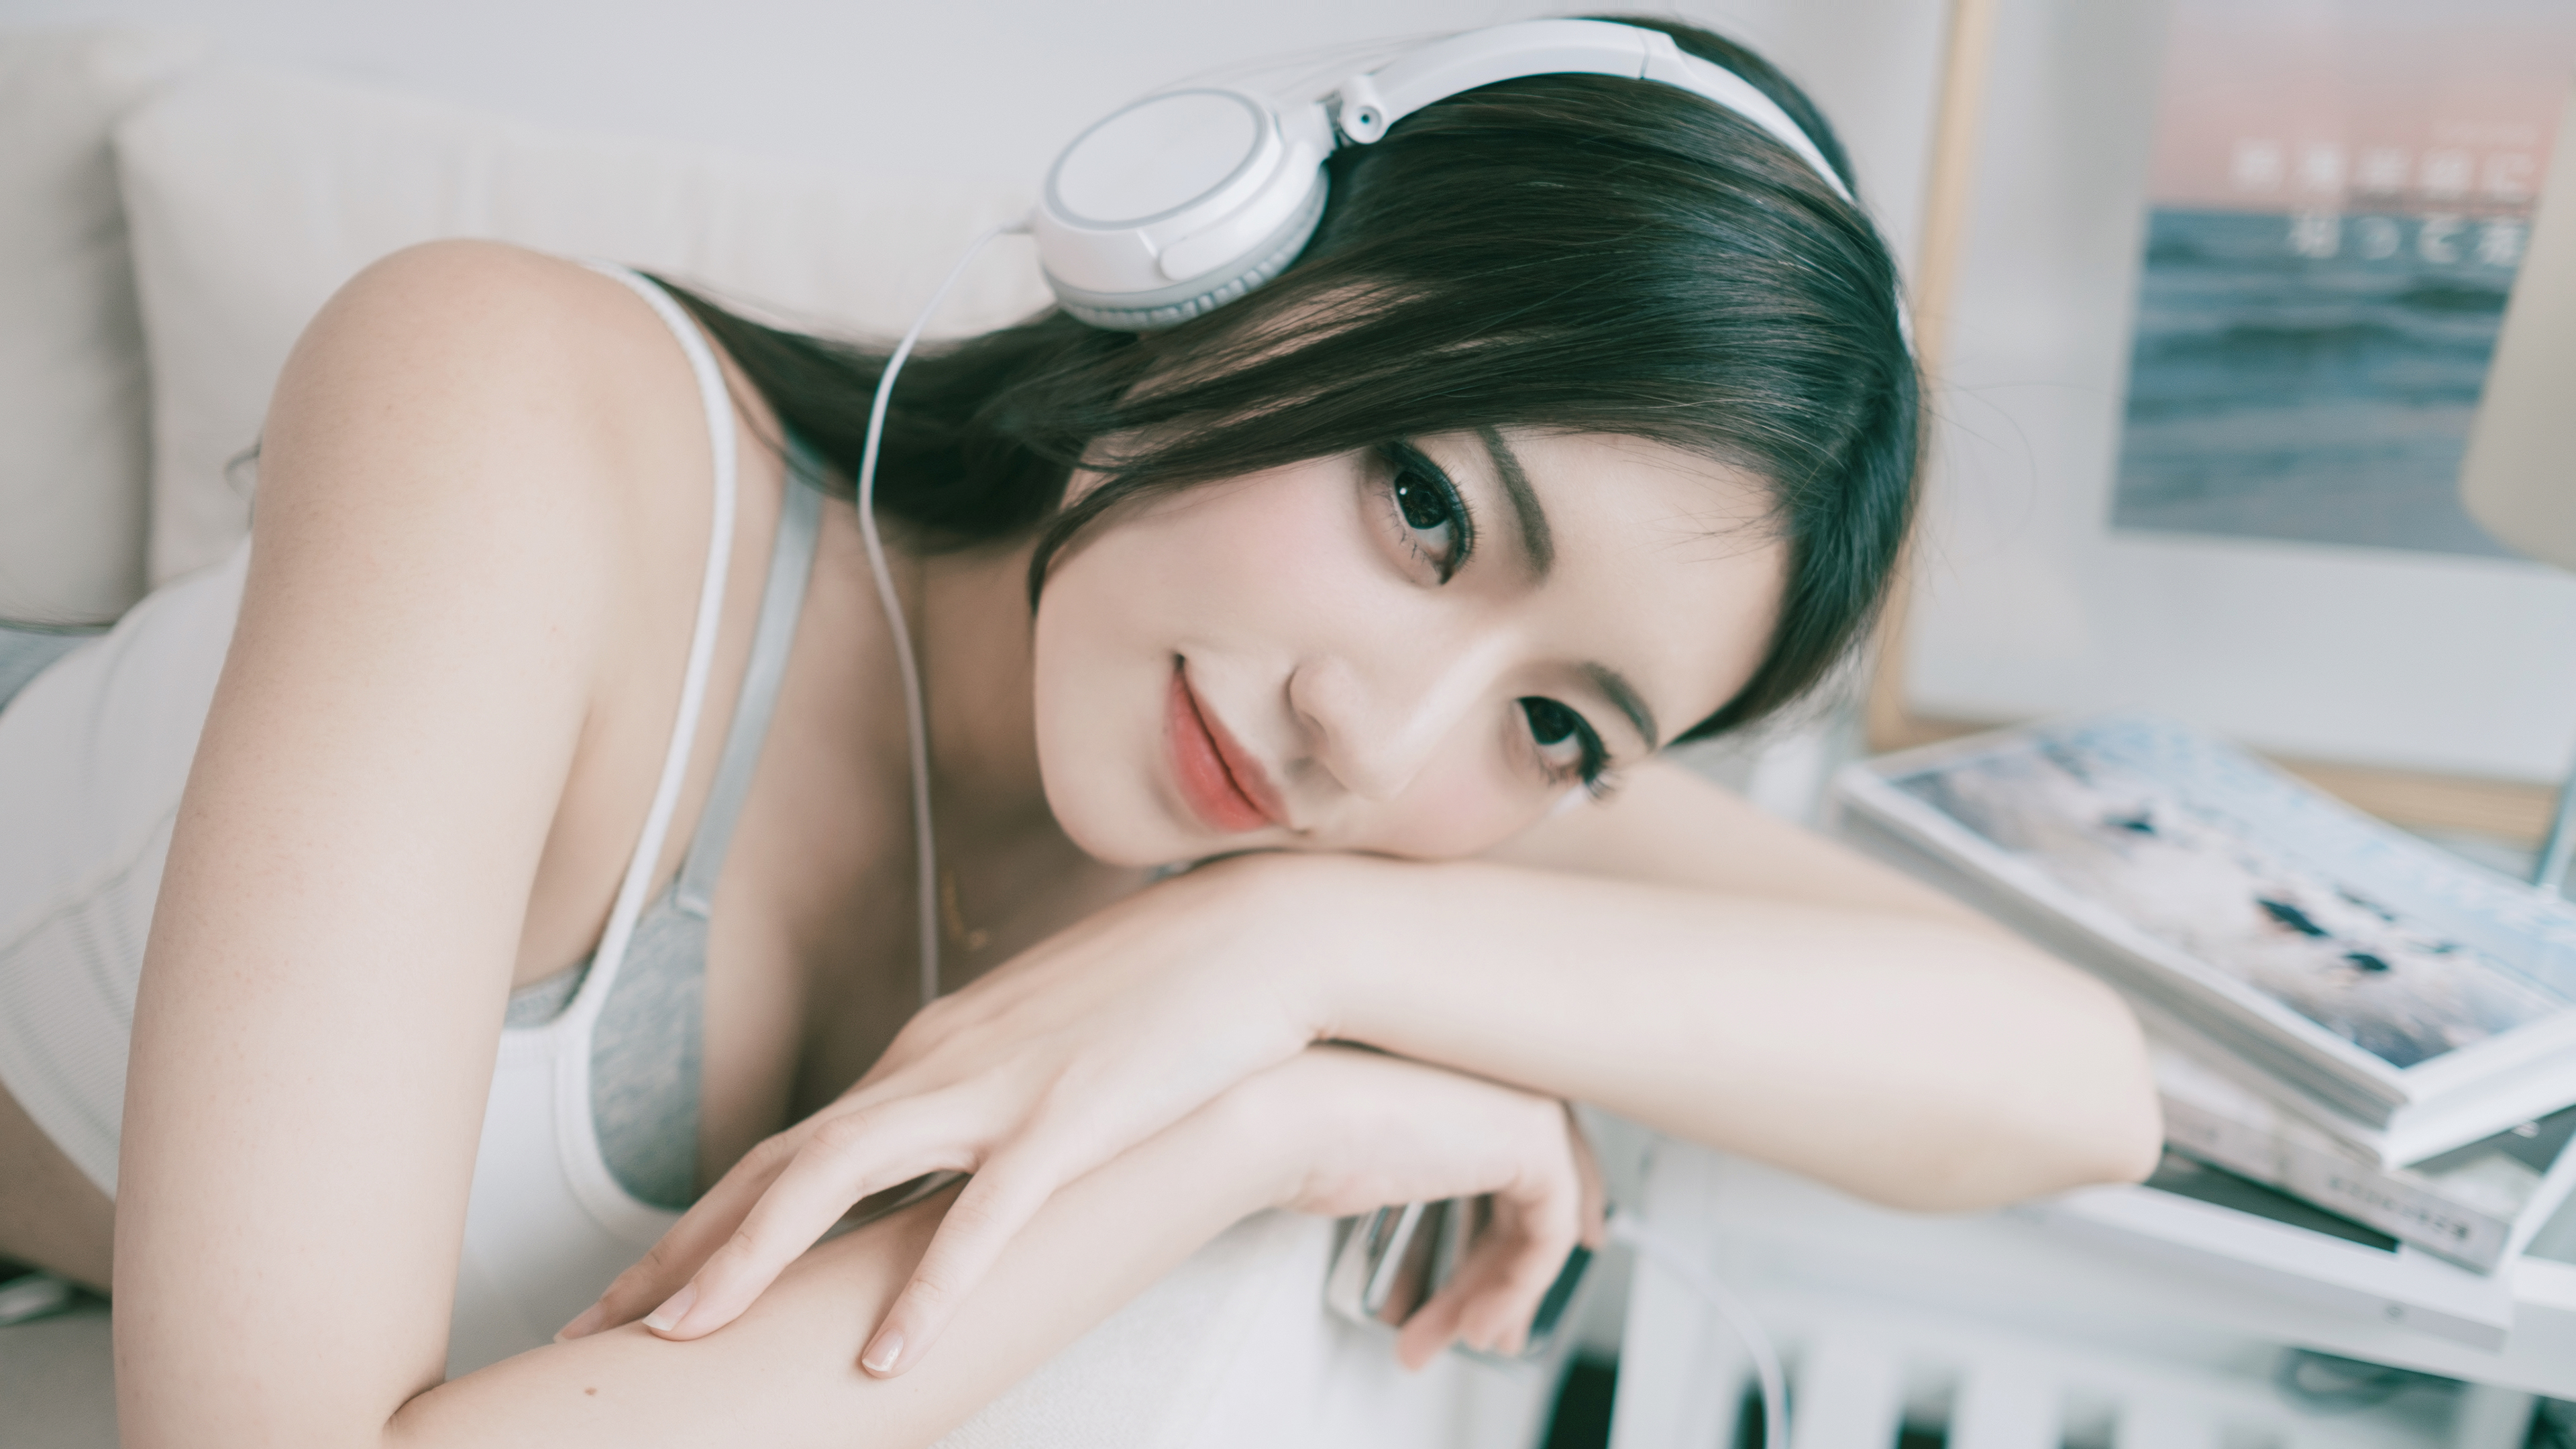 Model Women Asian Brunette Headphones Arms Crossed Long Hair Looking At Viewer Resting Head Women In 3840x2160